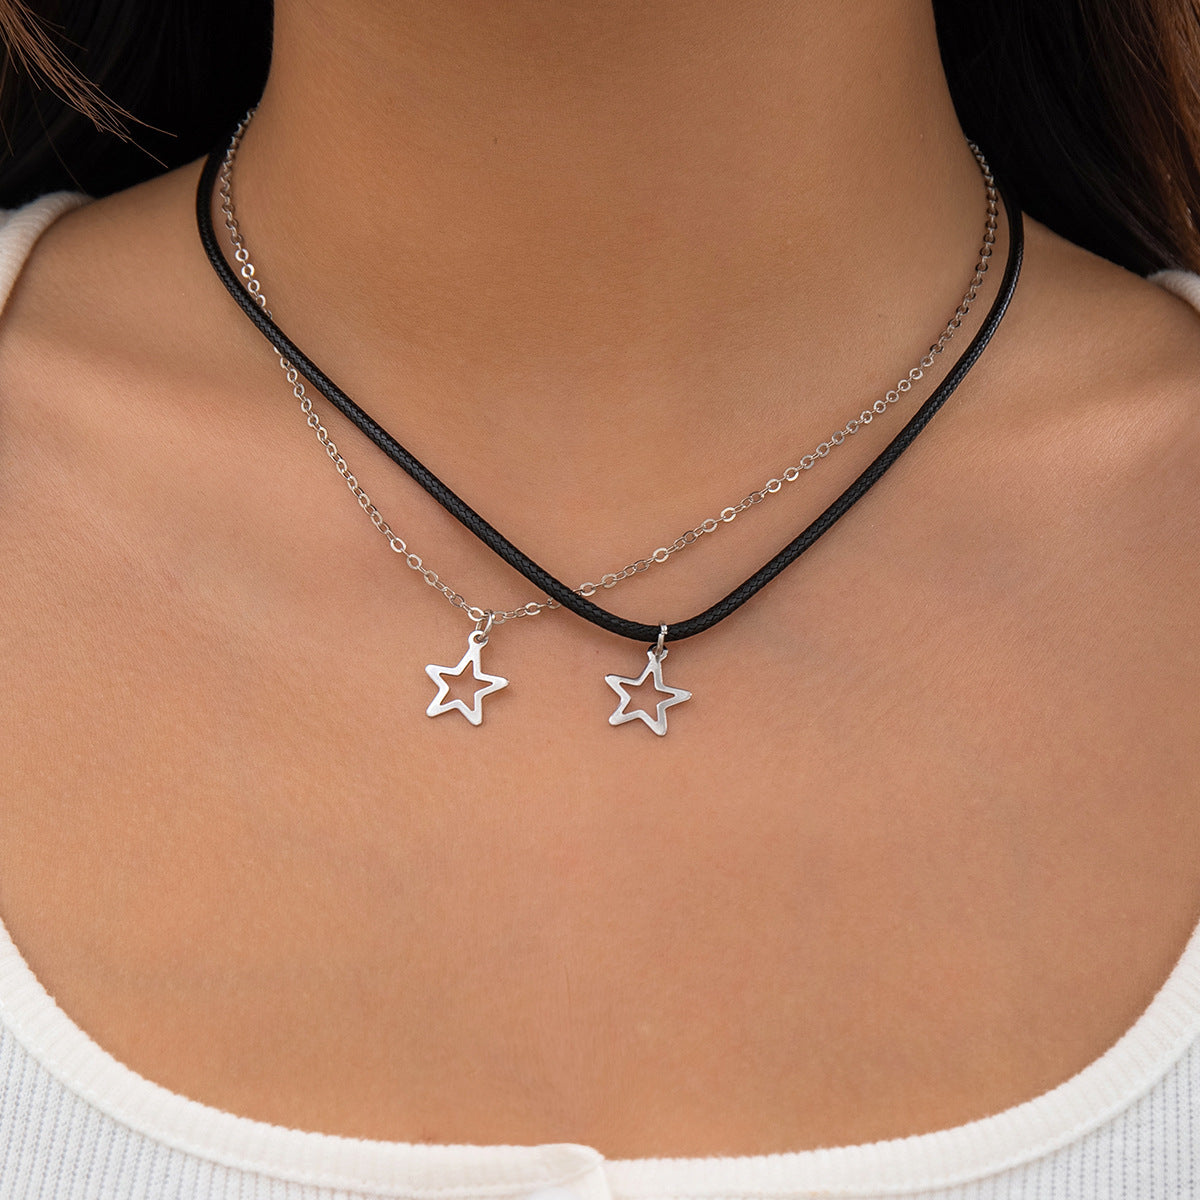 Elegant Titanium Steel Star Necklace with Chic Geometric Pendant